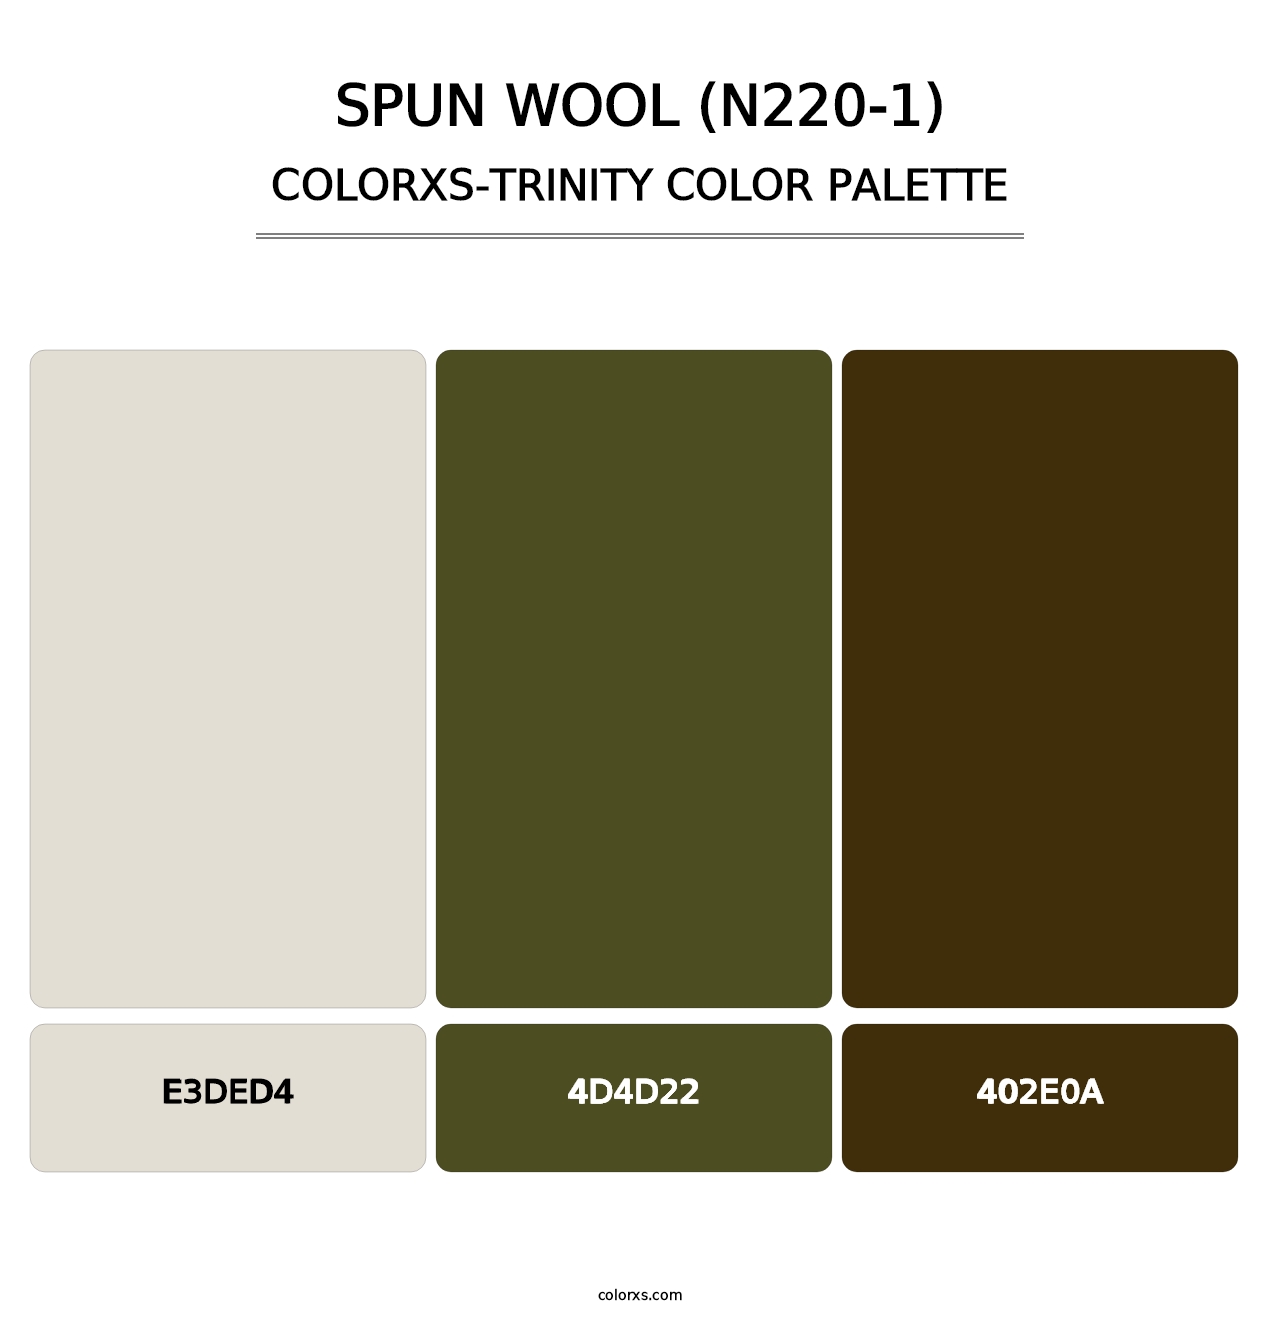 Spun Wool (N220-1) - Colorxs Trinity Palette